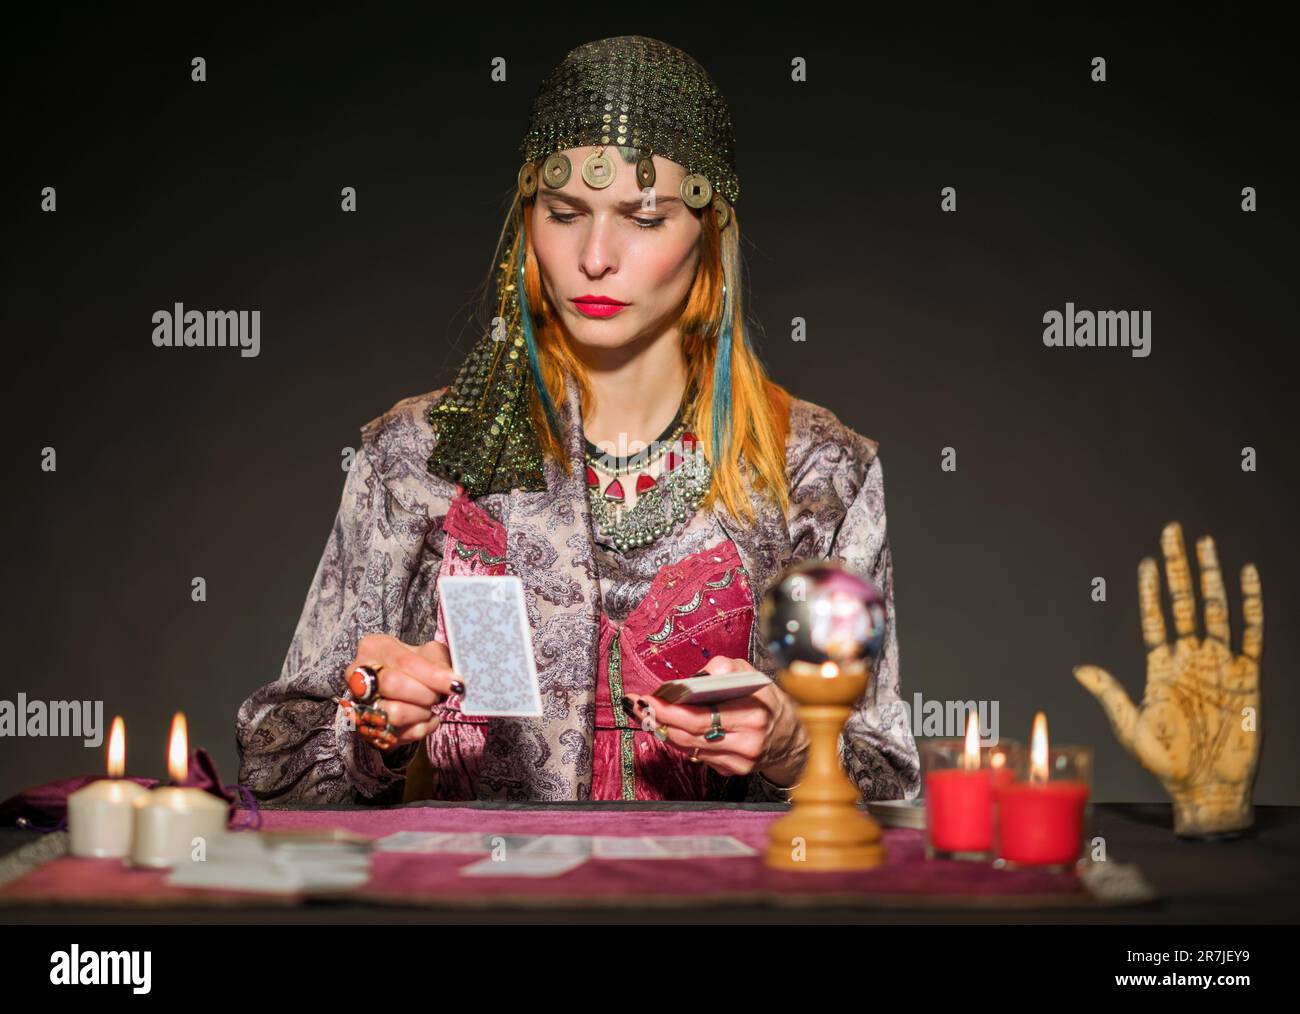 Fokussierter Wahrsager in authentischem Outfit und Münzkopfstück, der mit brennenden Kerzen am Tisch sitzt und mit Tarotkarten die Zukunft erraten kann Stockfoto